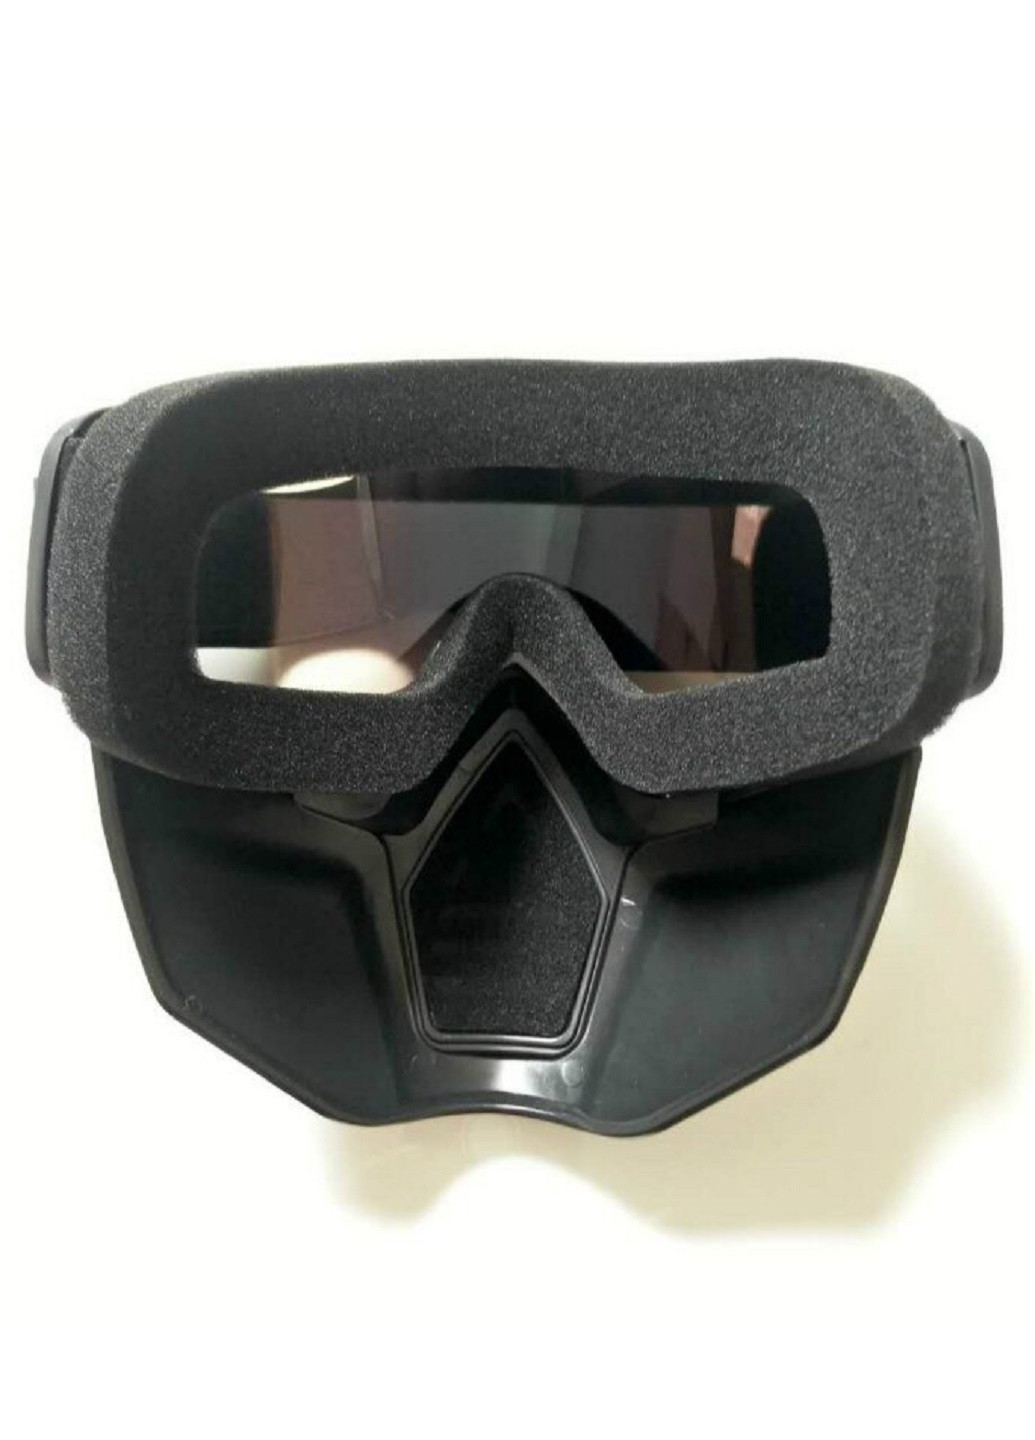 Защитные очки маска горнолыжная для катания на горных лыжах сноуборде для зимних видов спорта универсальная (71025-Нов) Francesco Marconi (252086106)